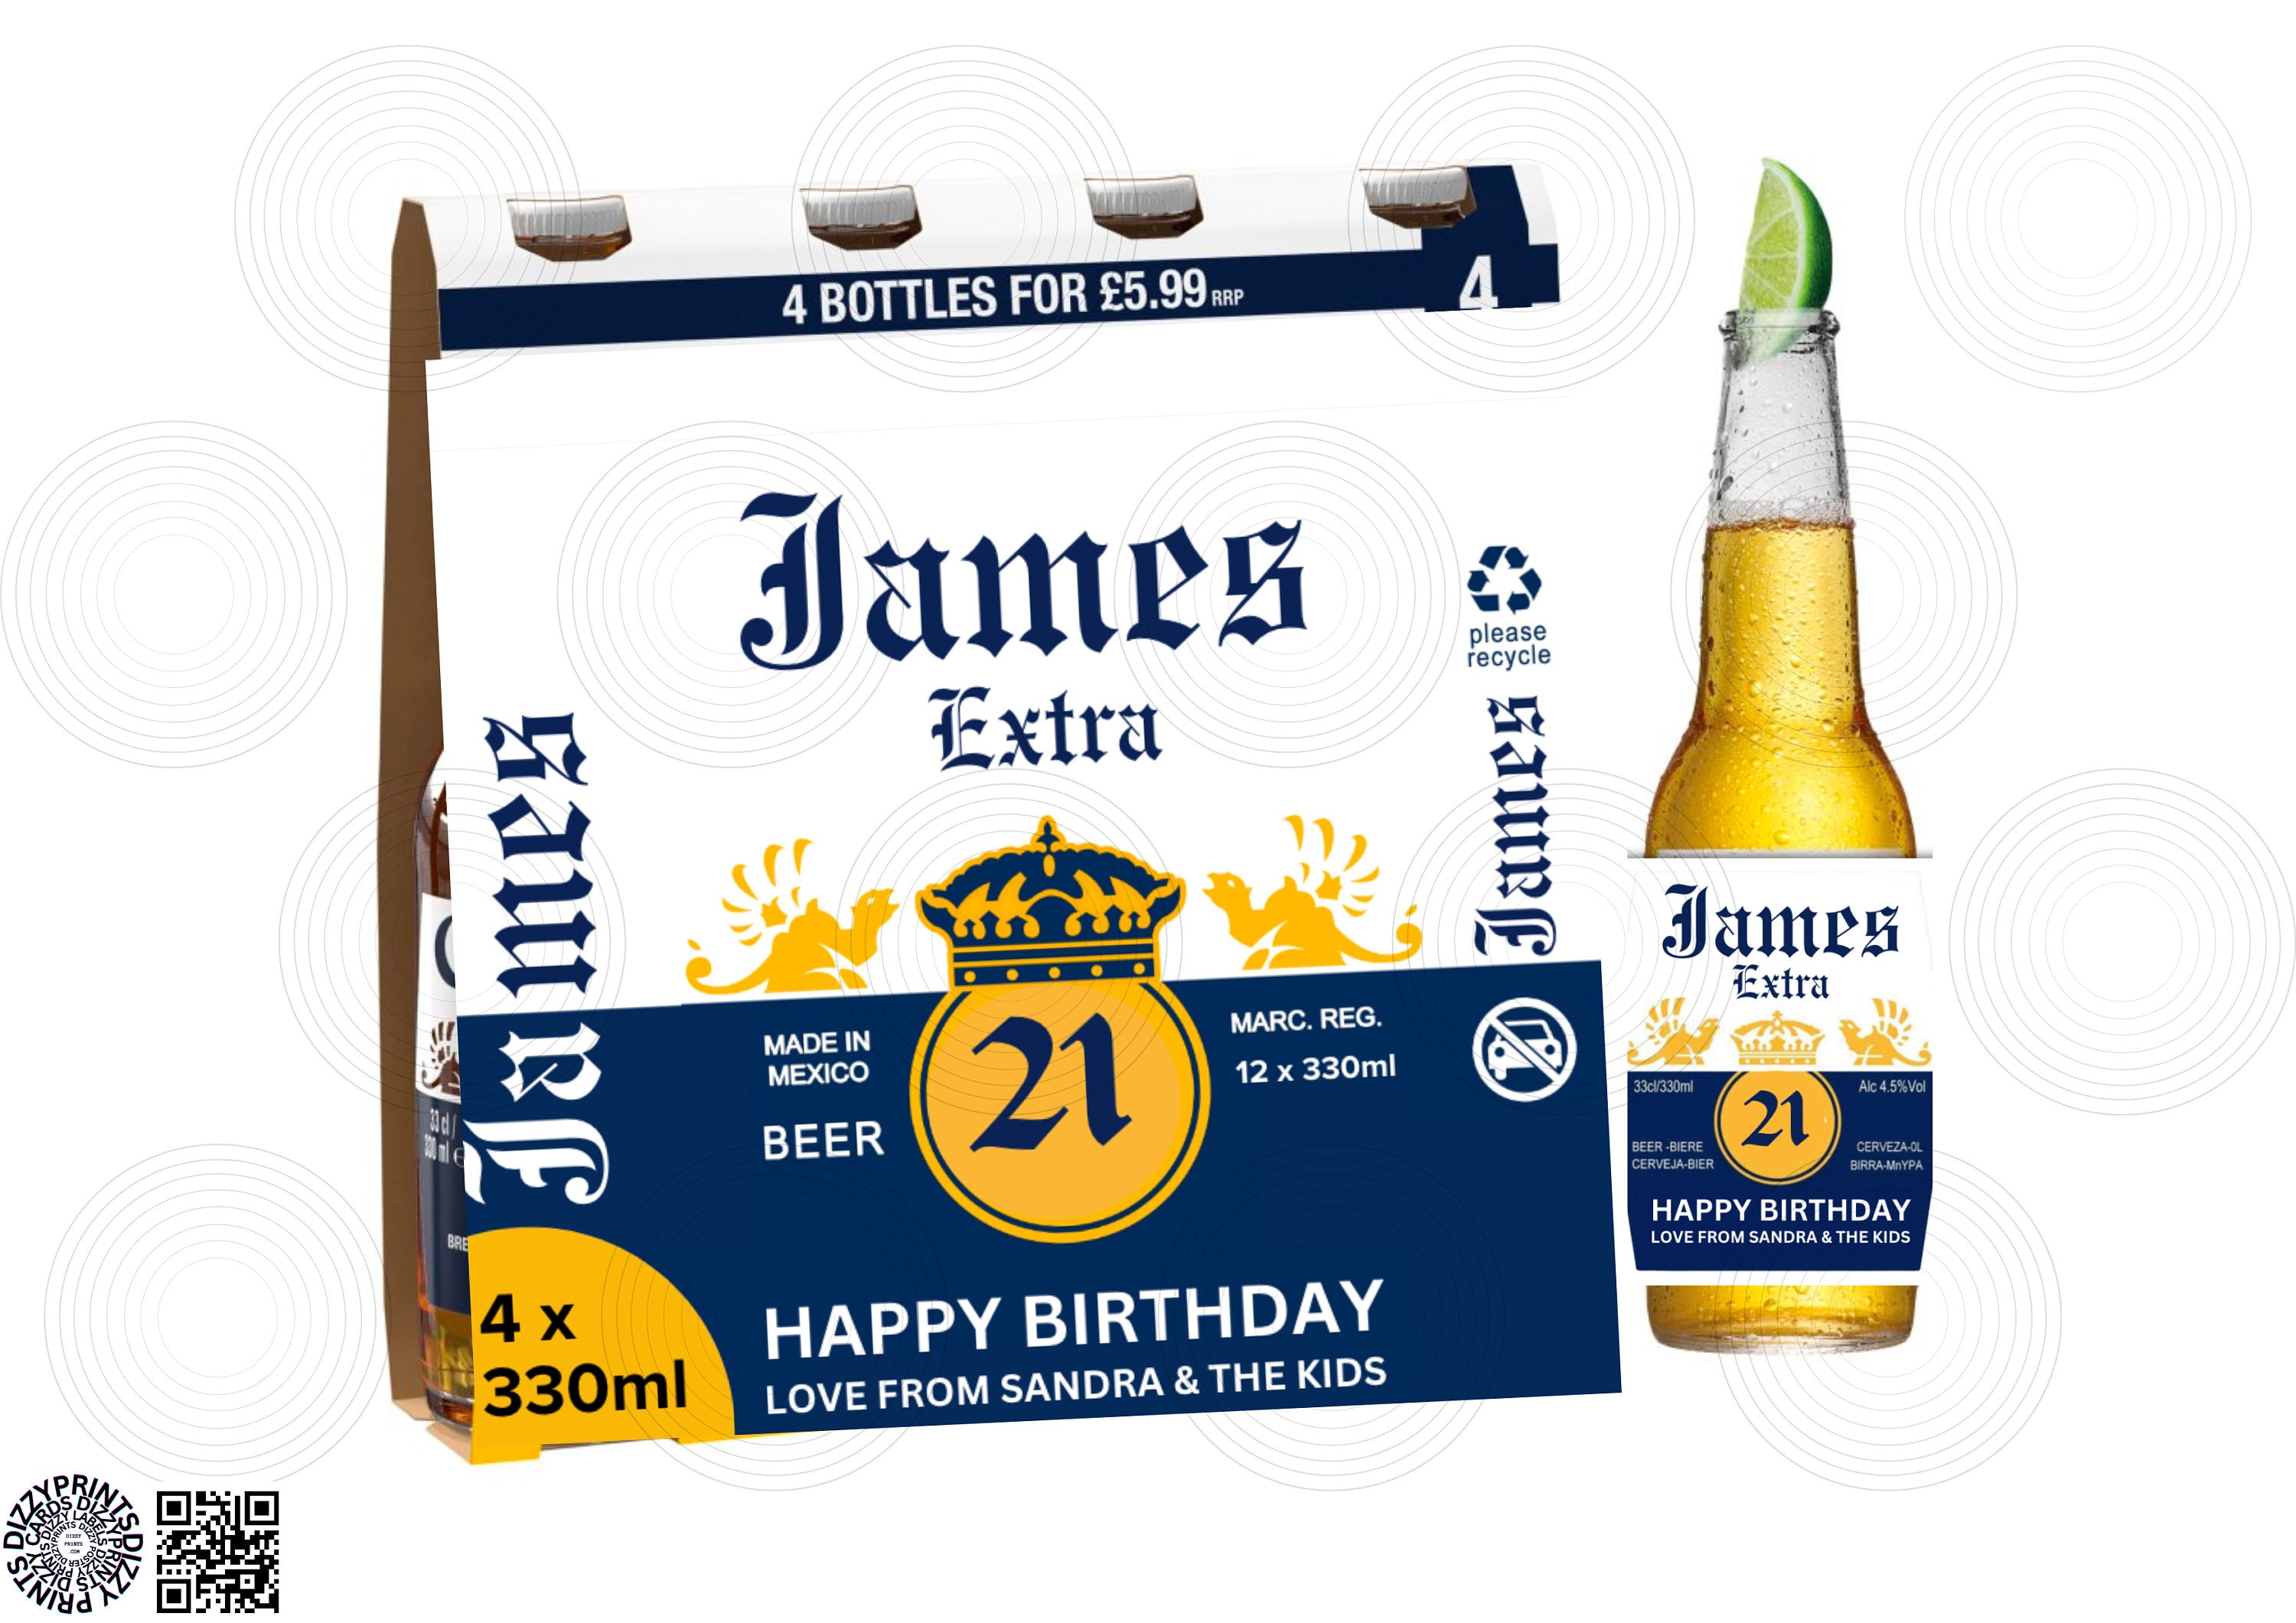 24x individuell personalisierte Etiketten für eine Kiste Bier ; auch mit  Foto